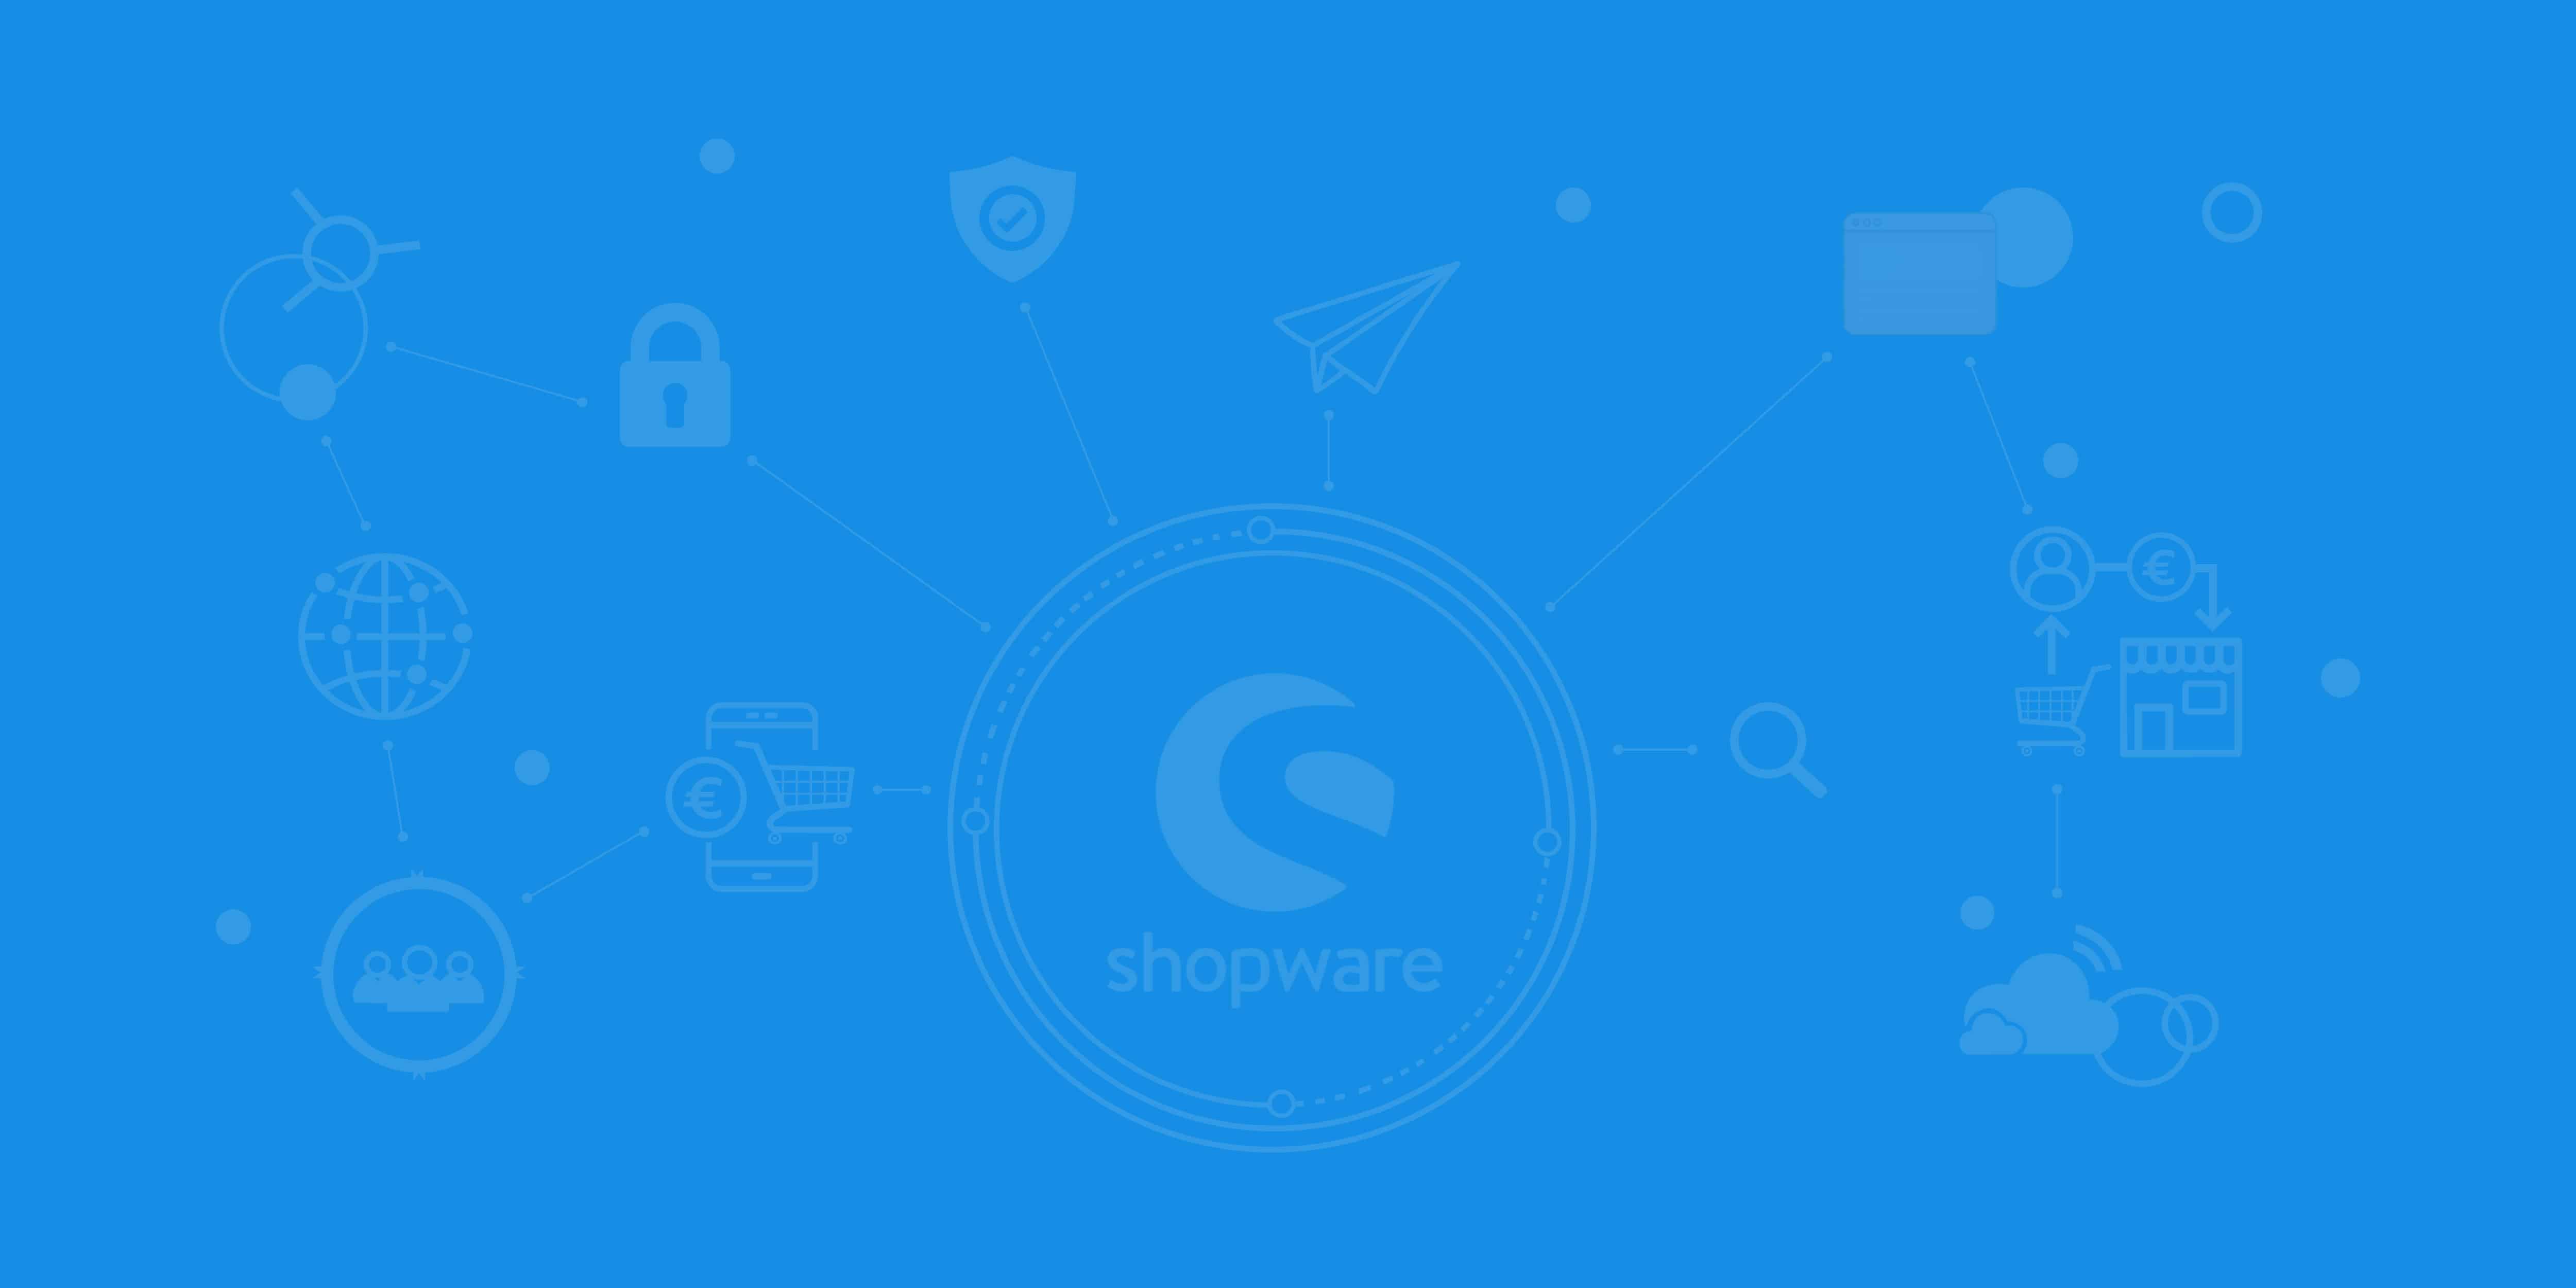 Das Logo von Shopware und die Angebotenen Dienstleistungen der Shopware Agentur